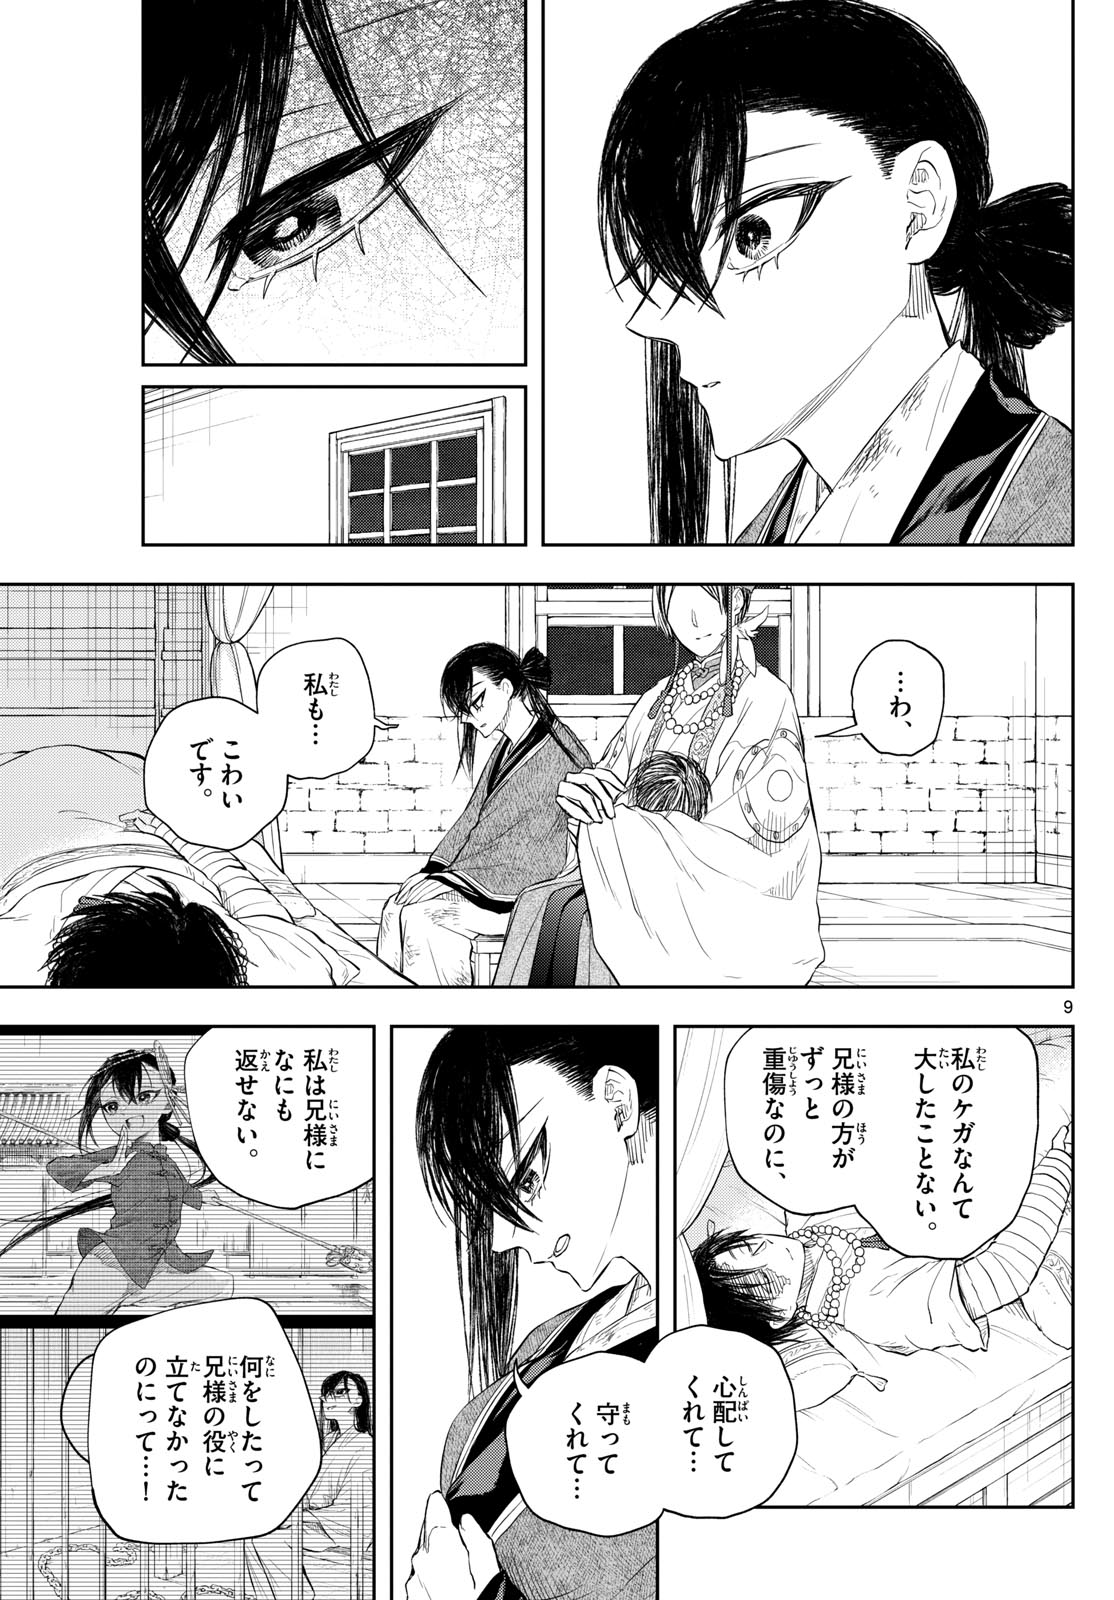 Akatsuki Jihen - Chapter 46 - Page 9